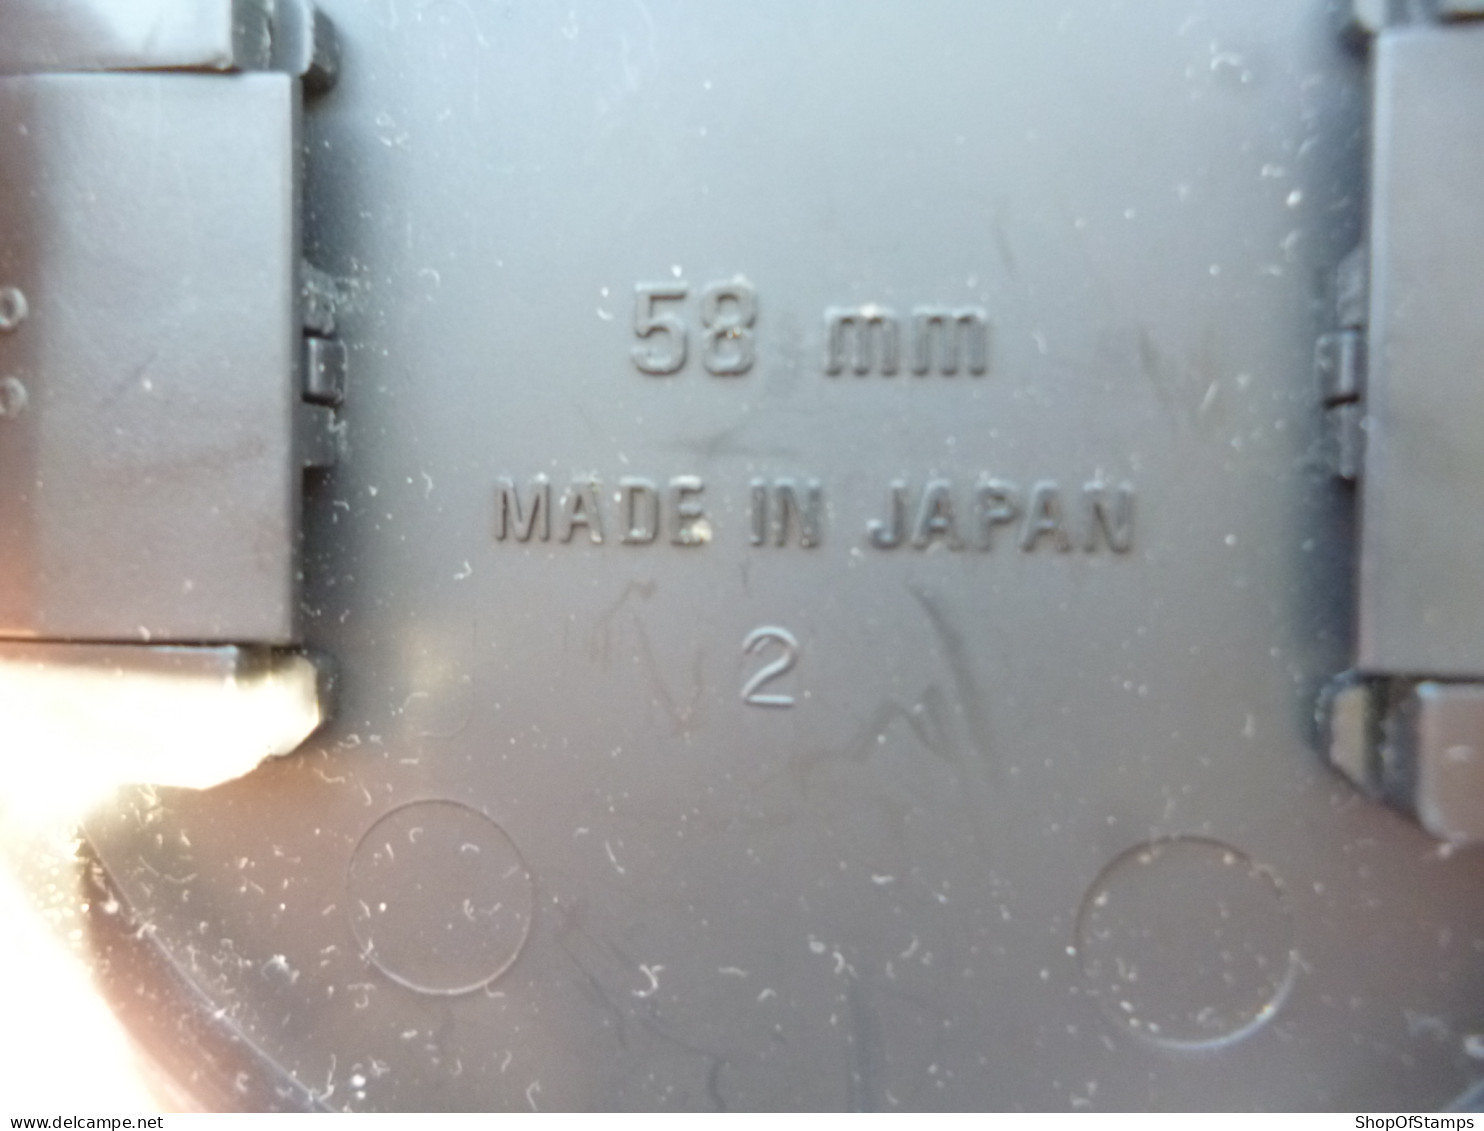 LENS: SIGMA 70-300 1.4-5.6 USED BUT GOOD CONDITION 58mm JAPAN - Matériel & Accessoires